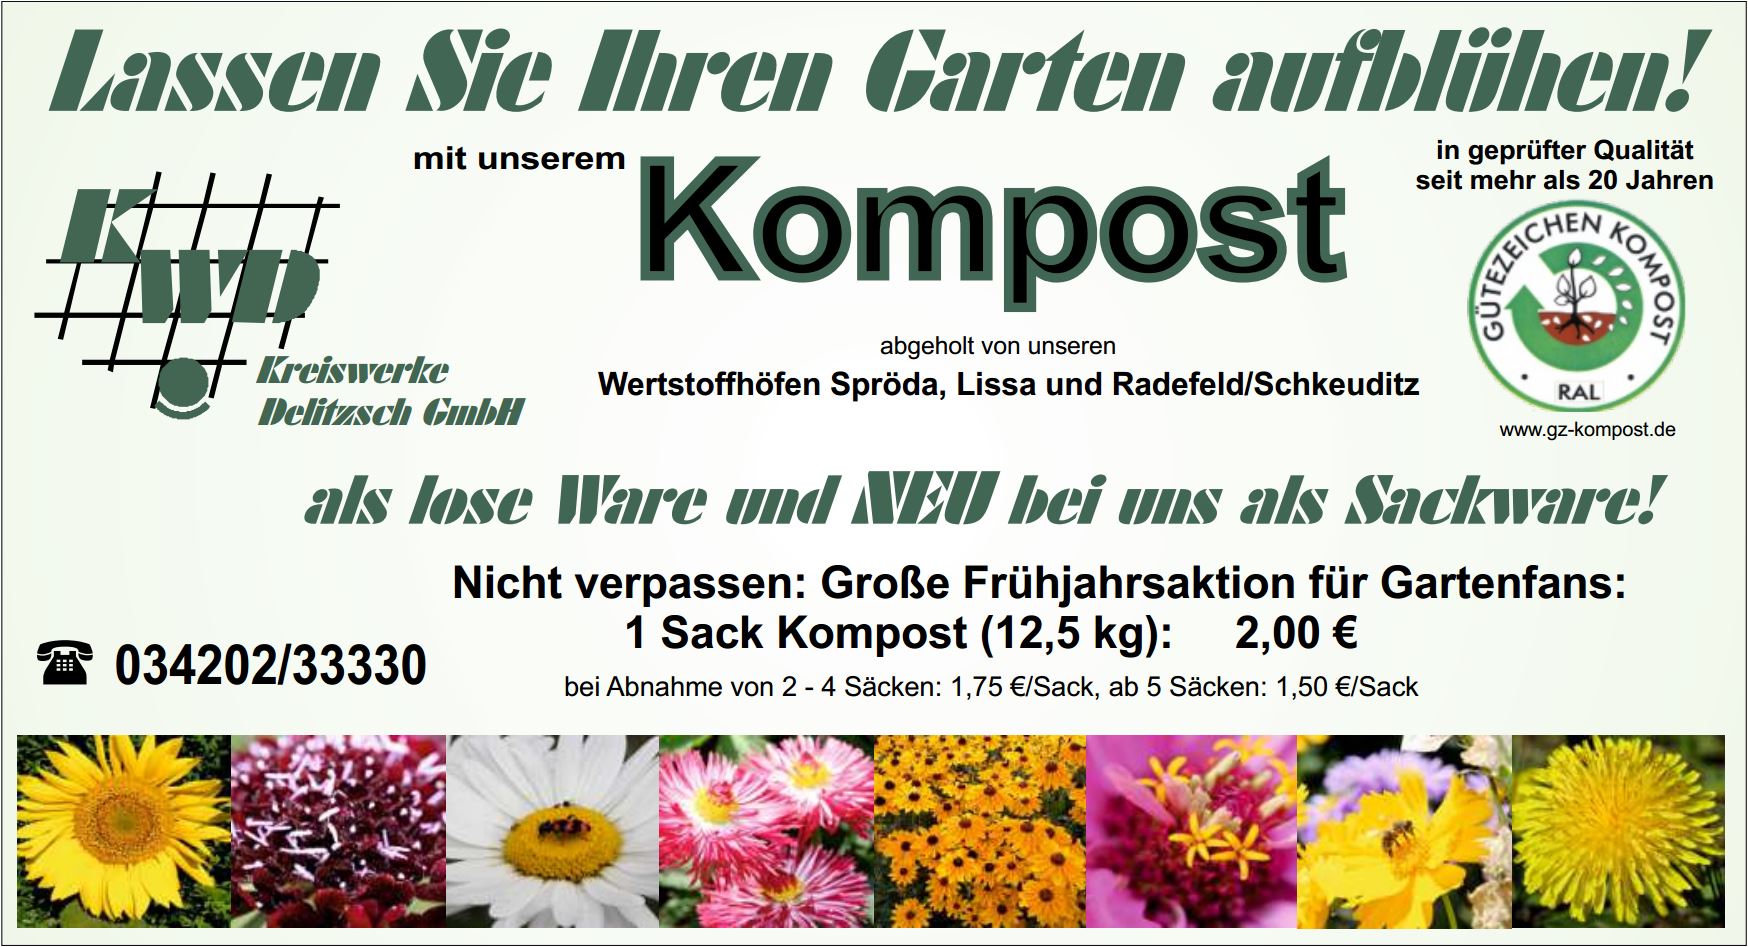 Zeitungsannonce: Lassen Sie Ihren Garten aufblühen! Mit unserem Kompost in geprüfter Qualität aus unseren Wertstoffhöfen Spröda, Lissa und Radefeld/Schkeuditz.